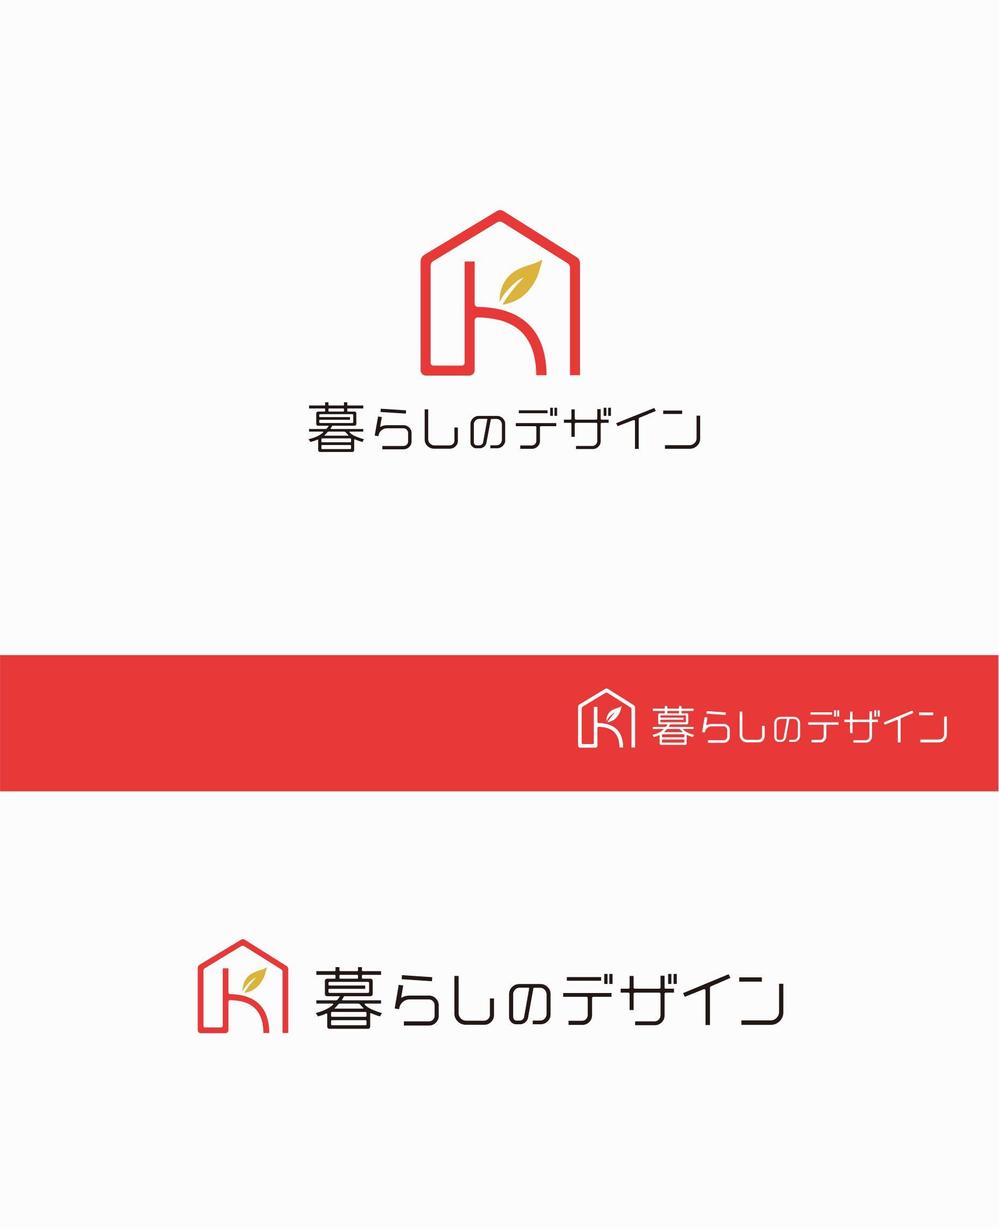 家具通販サイト「暮らしのデザイン」のロゴ制作